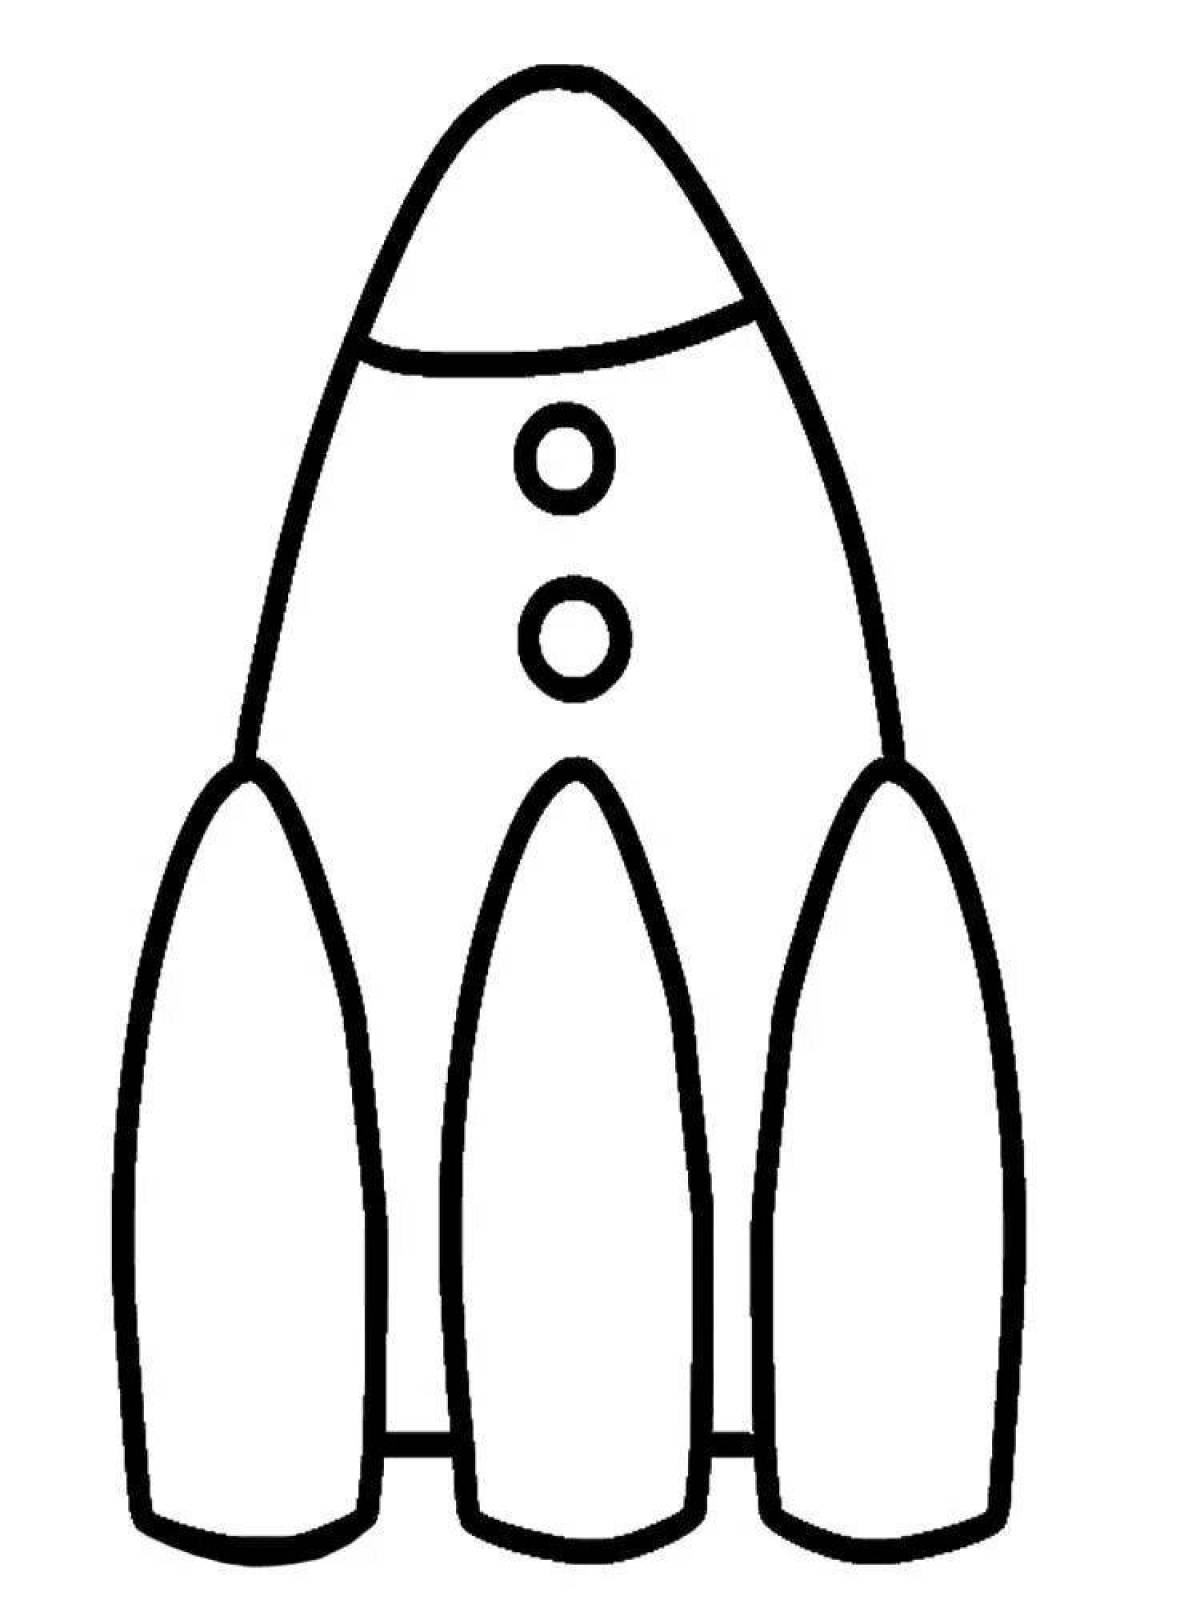 Раскраска ракета для детей 4 лет. Раскраскаидля малышей. Ракета раскраска. Ракета раскраска для детей. Раскраски длы я малышей.